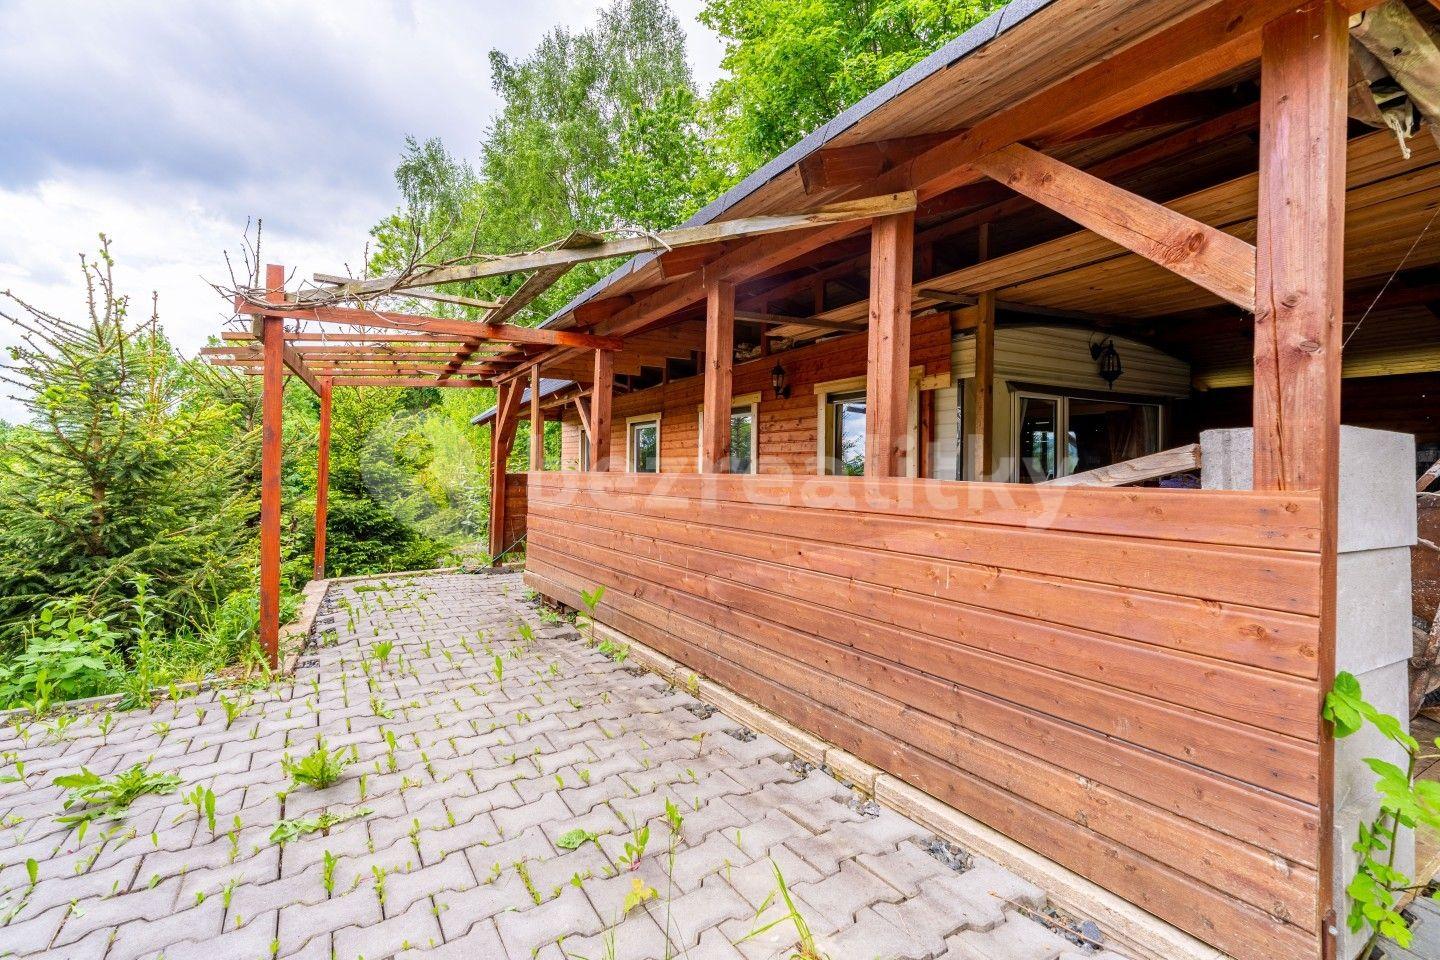 recreational property for sale, 5,241 m², Dalečín, Vysočina Region